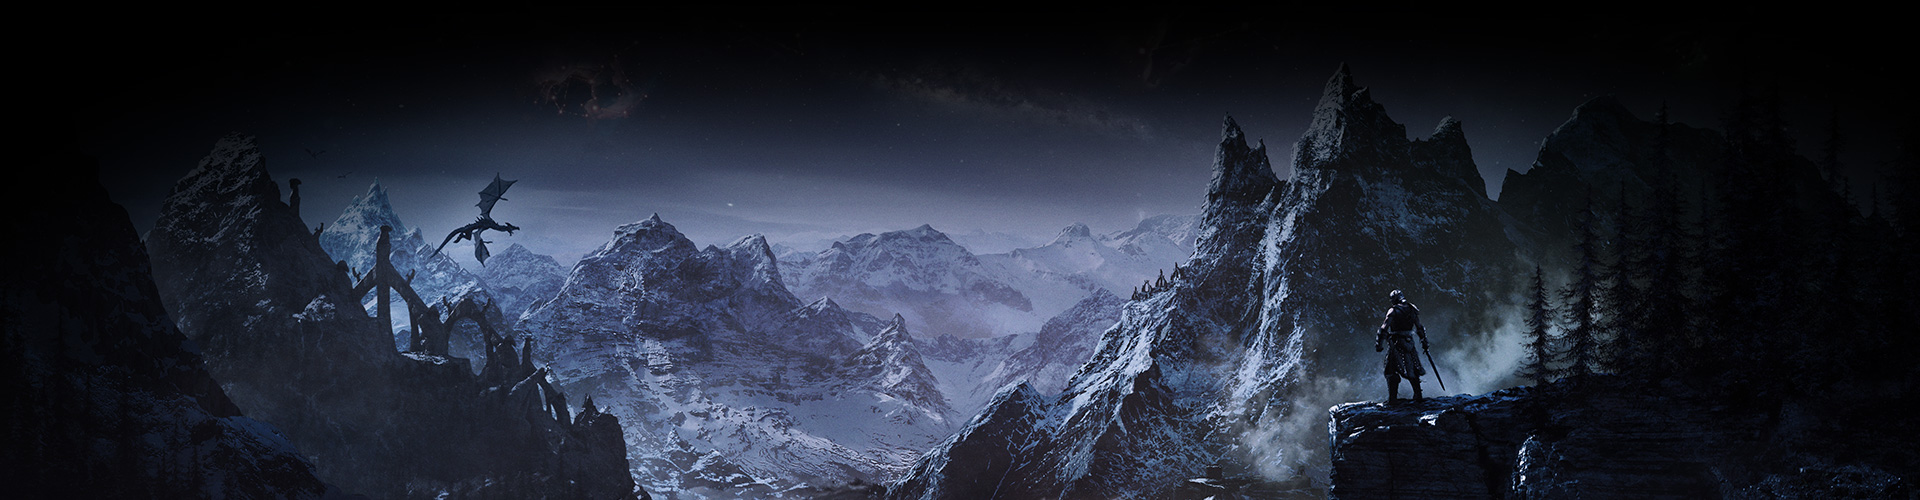 Un personaje mira hacia un valle de montañas nevadas mientras un dragón se eleva por encima